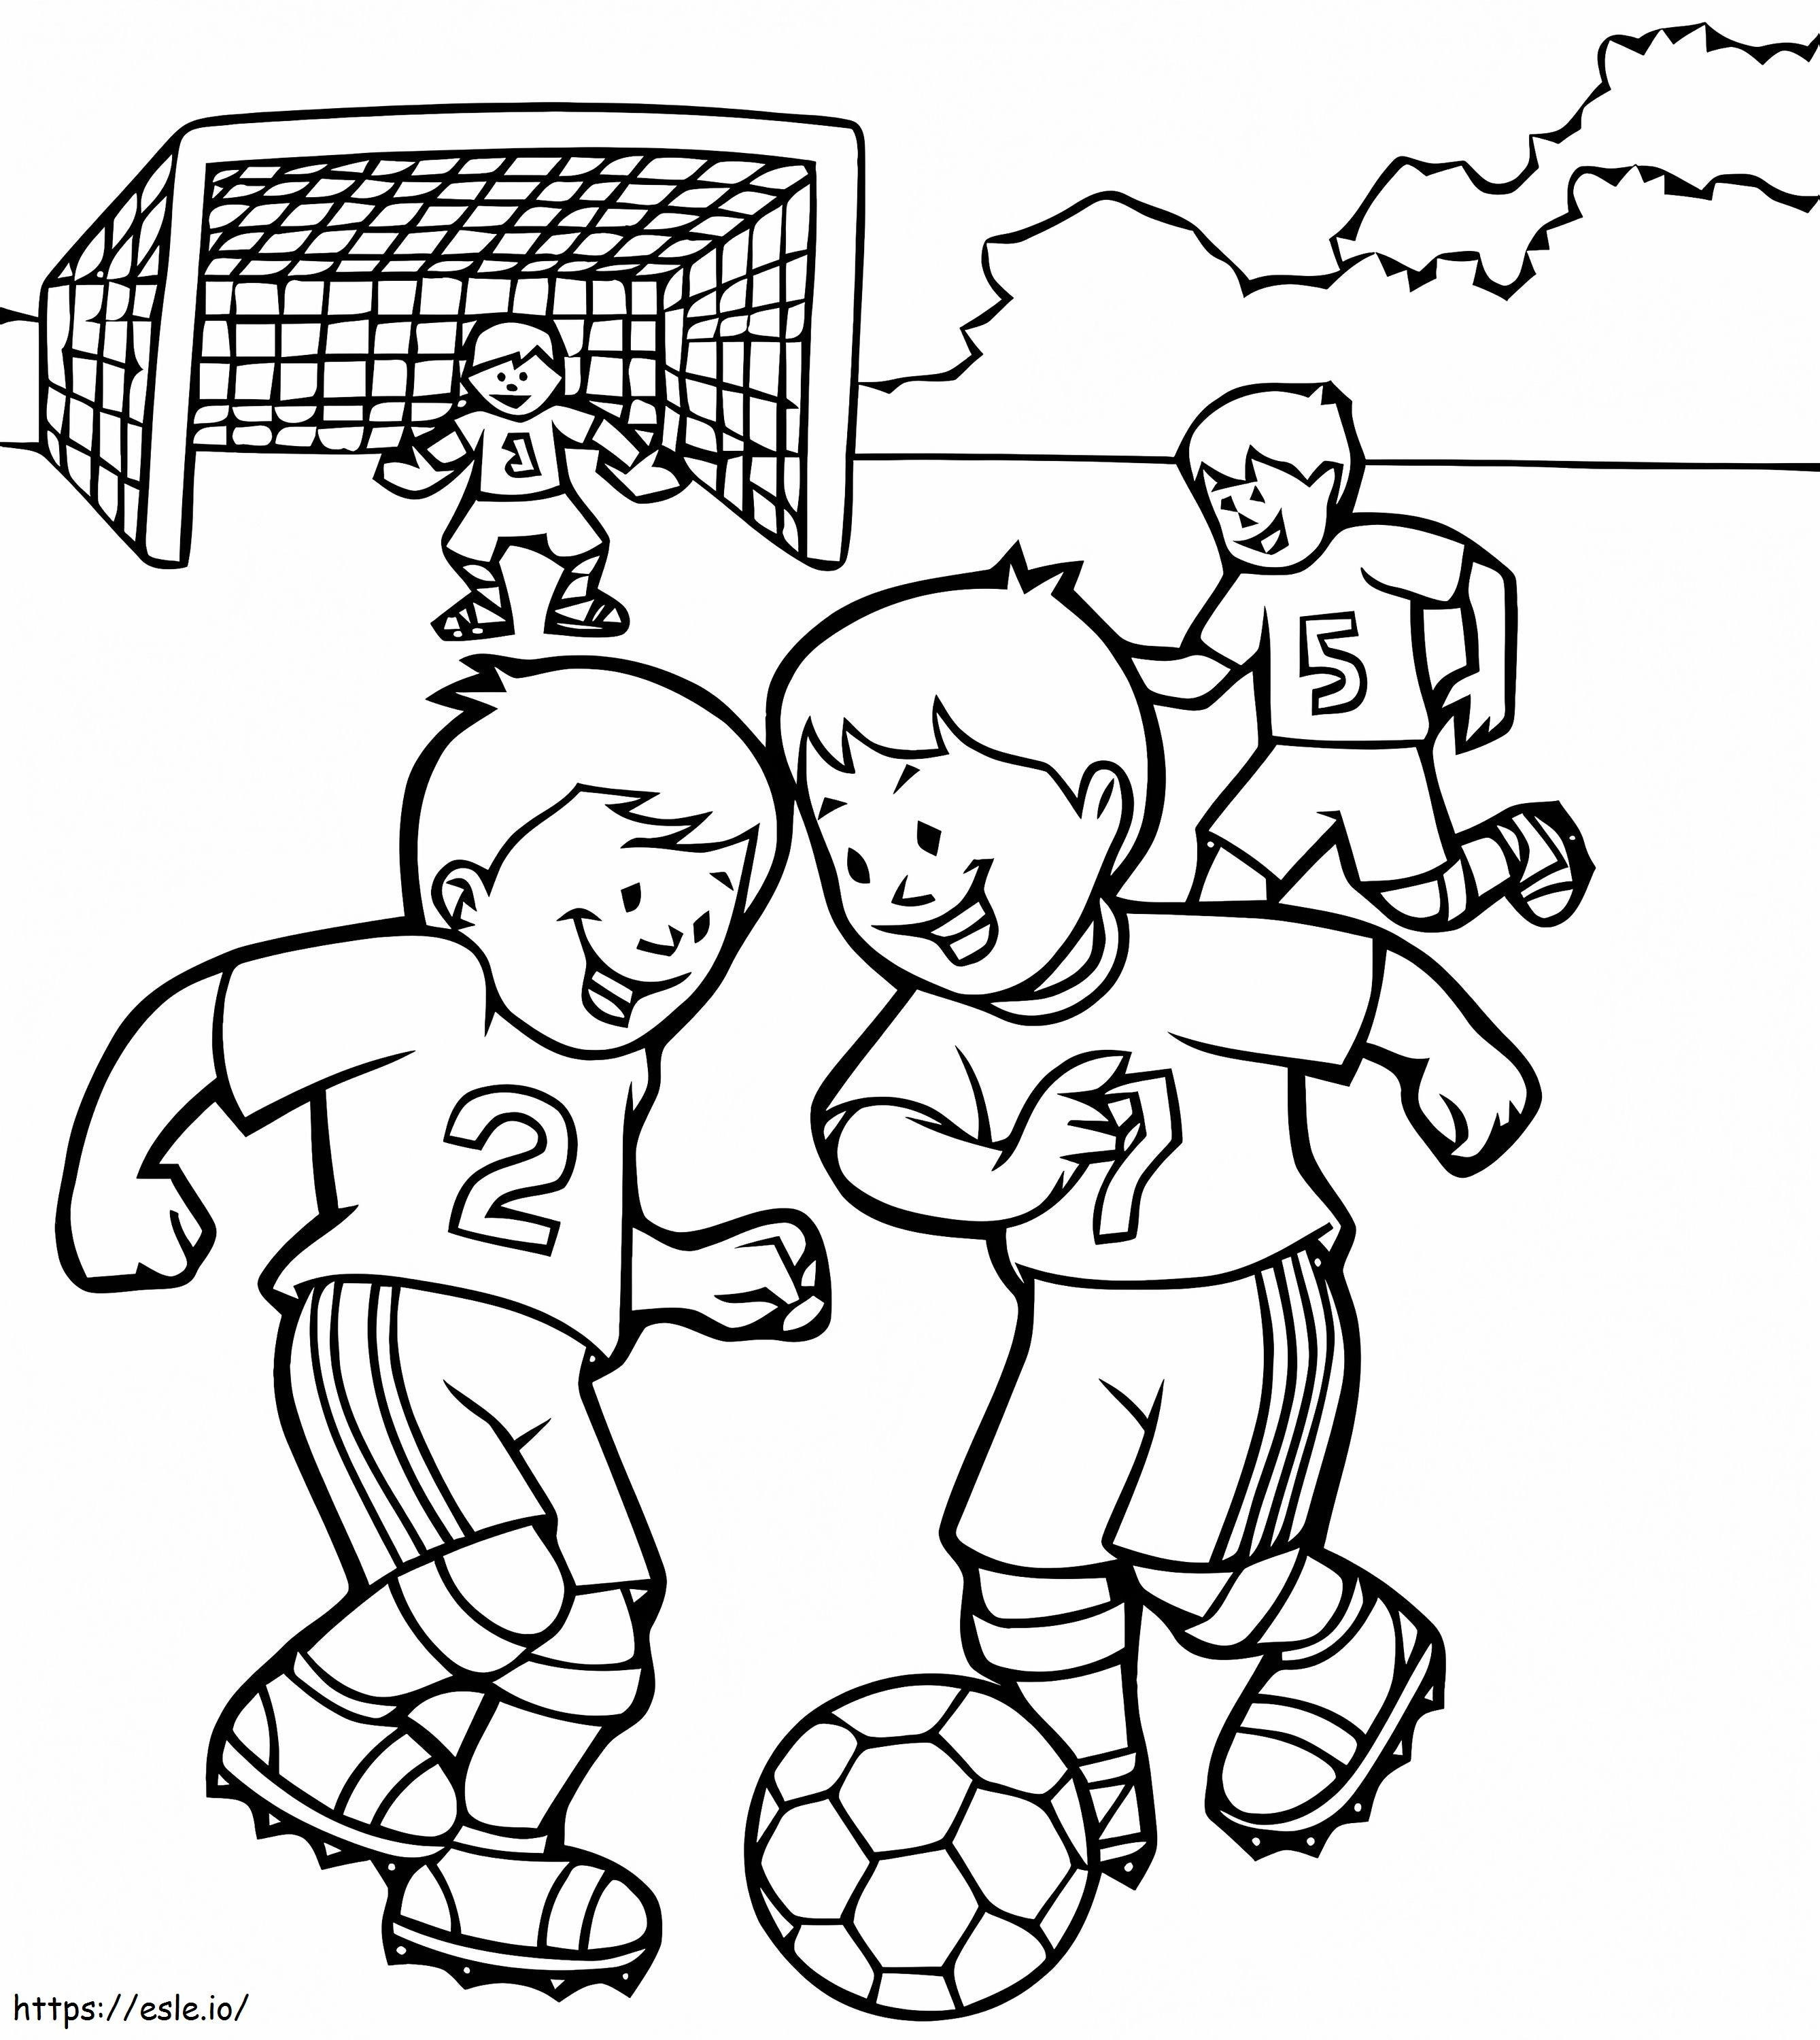 Coloriage Coloriage pour enfants Football 96494 à imprimer dessin